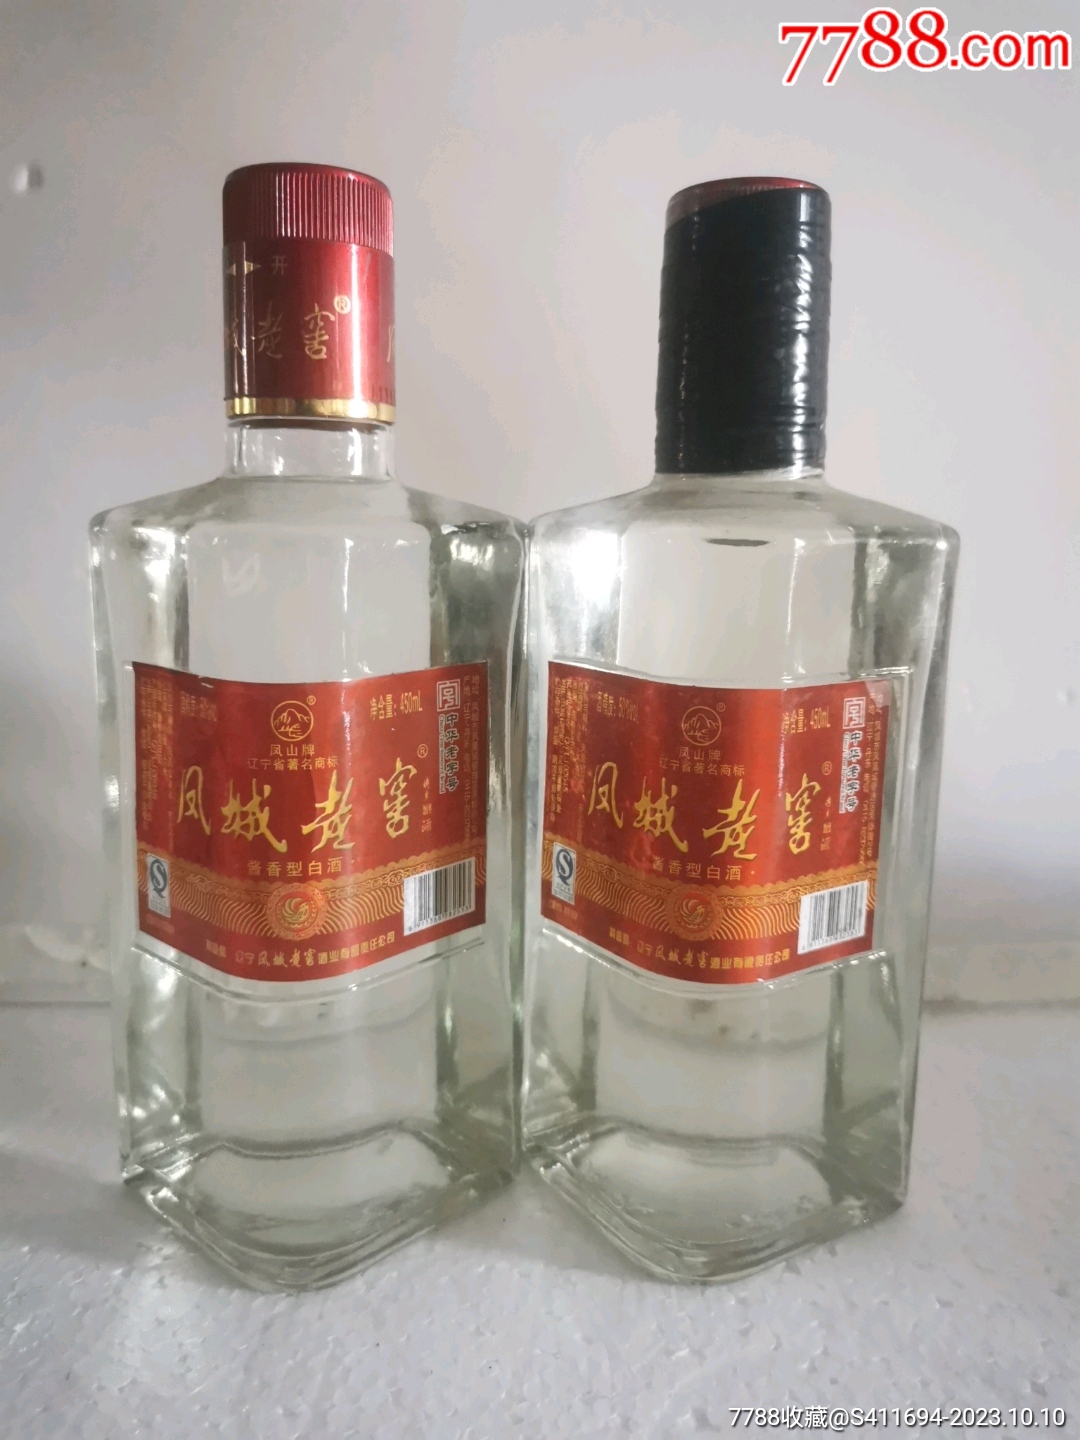 产品展示-辽宁凤城老窖酒业有限责任公司_凤城老窖酒,凤城老窖酒业